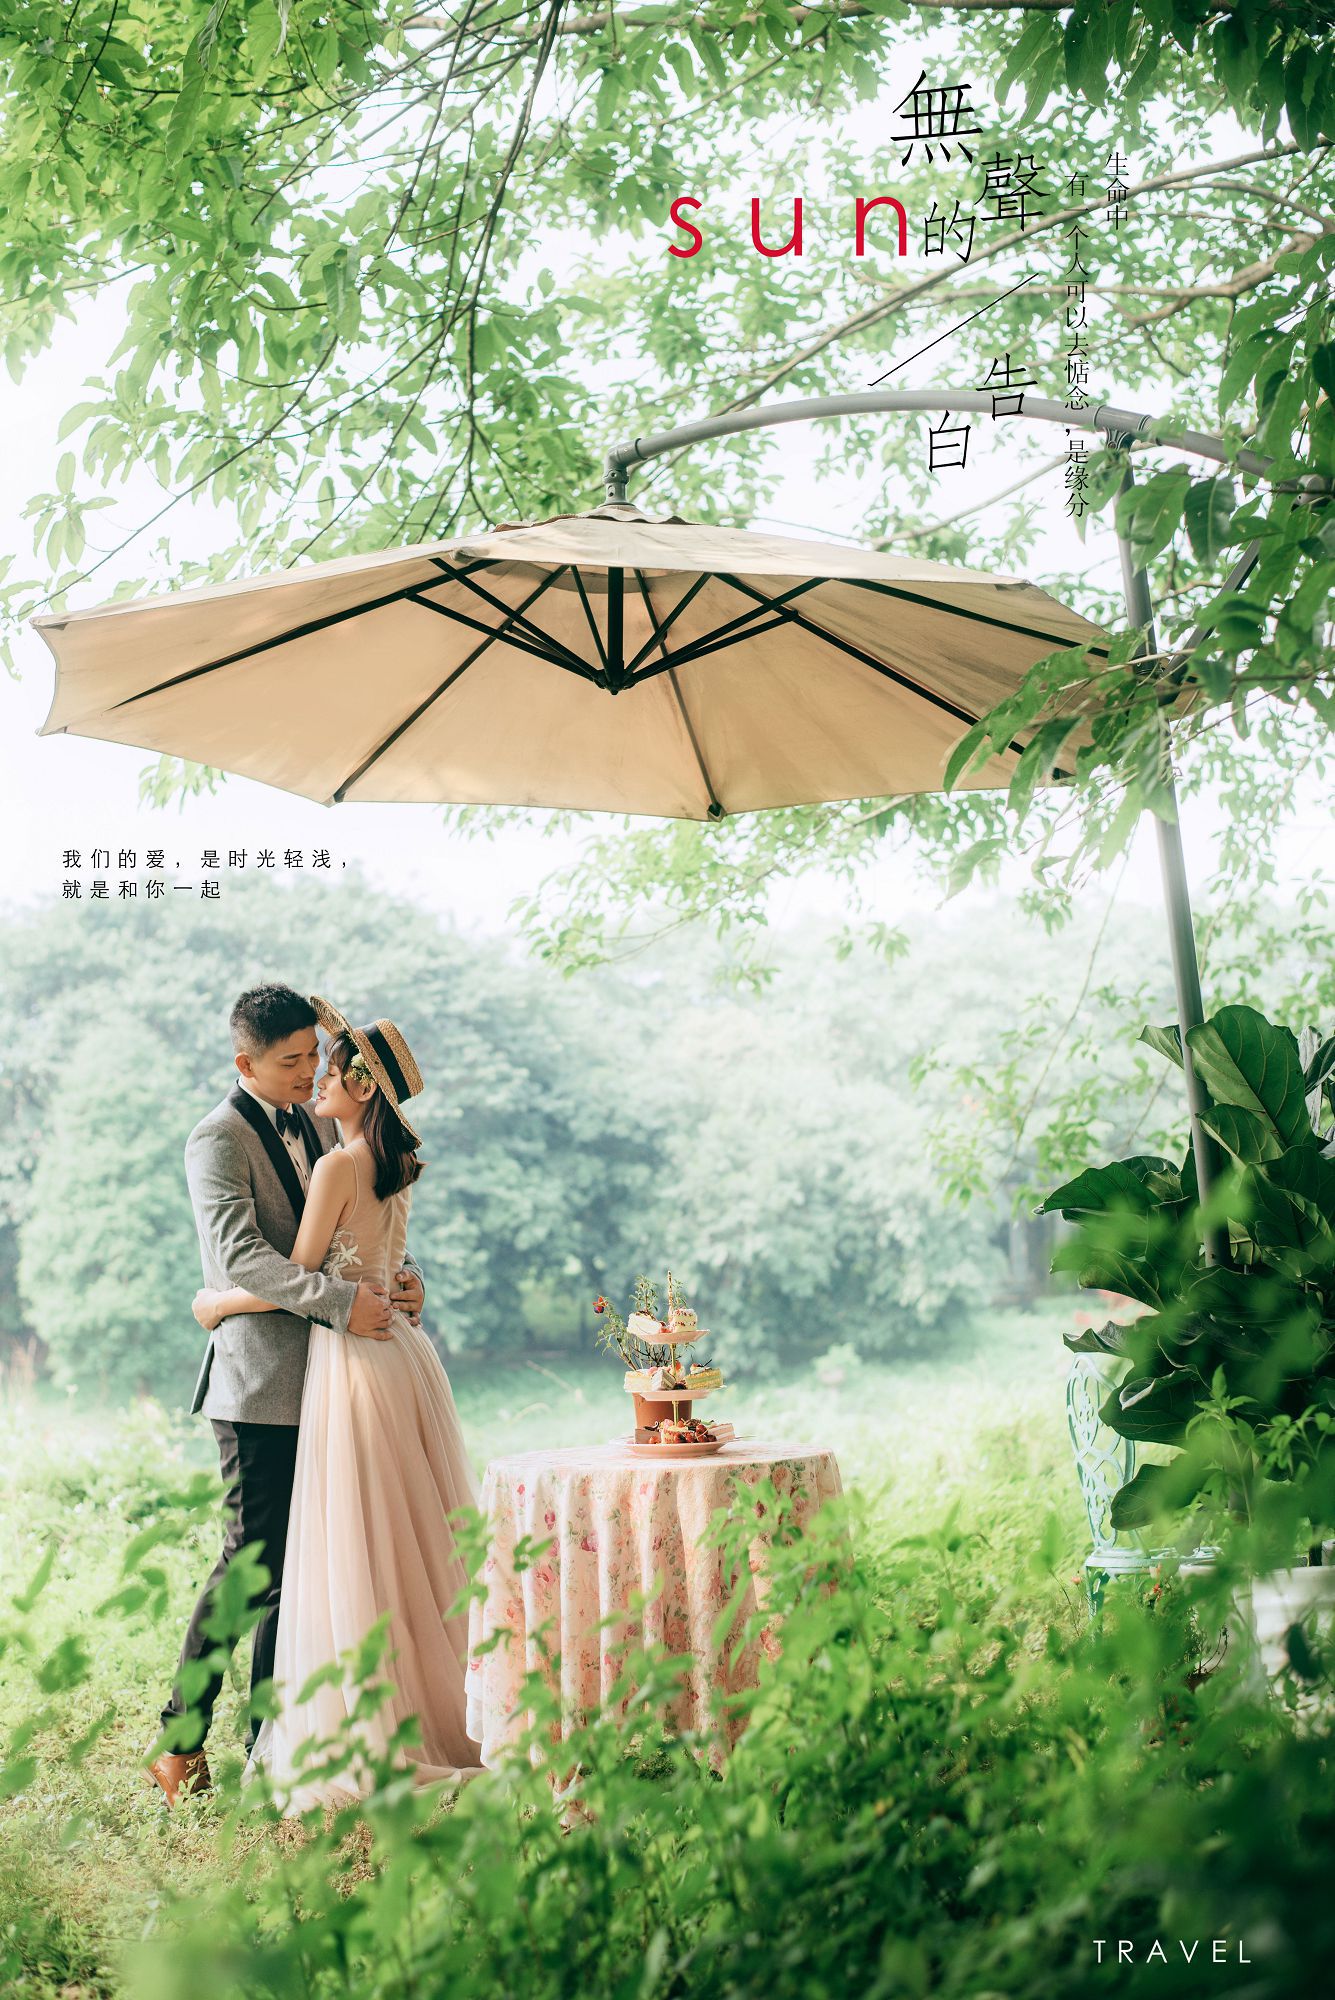 2019年7月广州婚纱照图片,佛山婚纱照,婚纱照图片